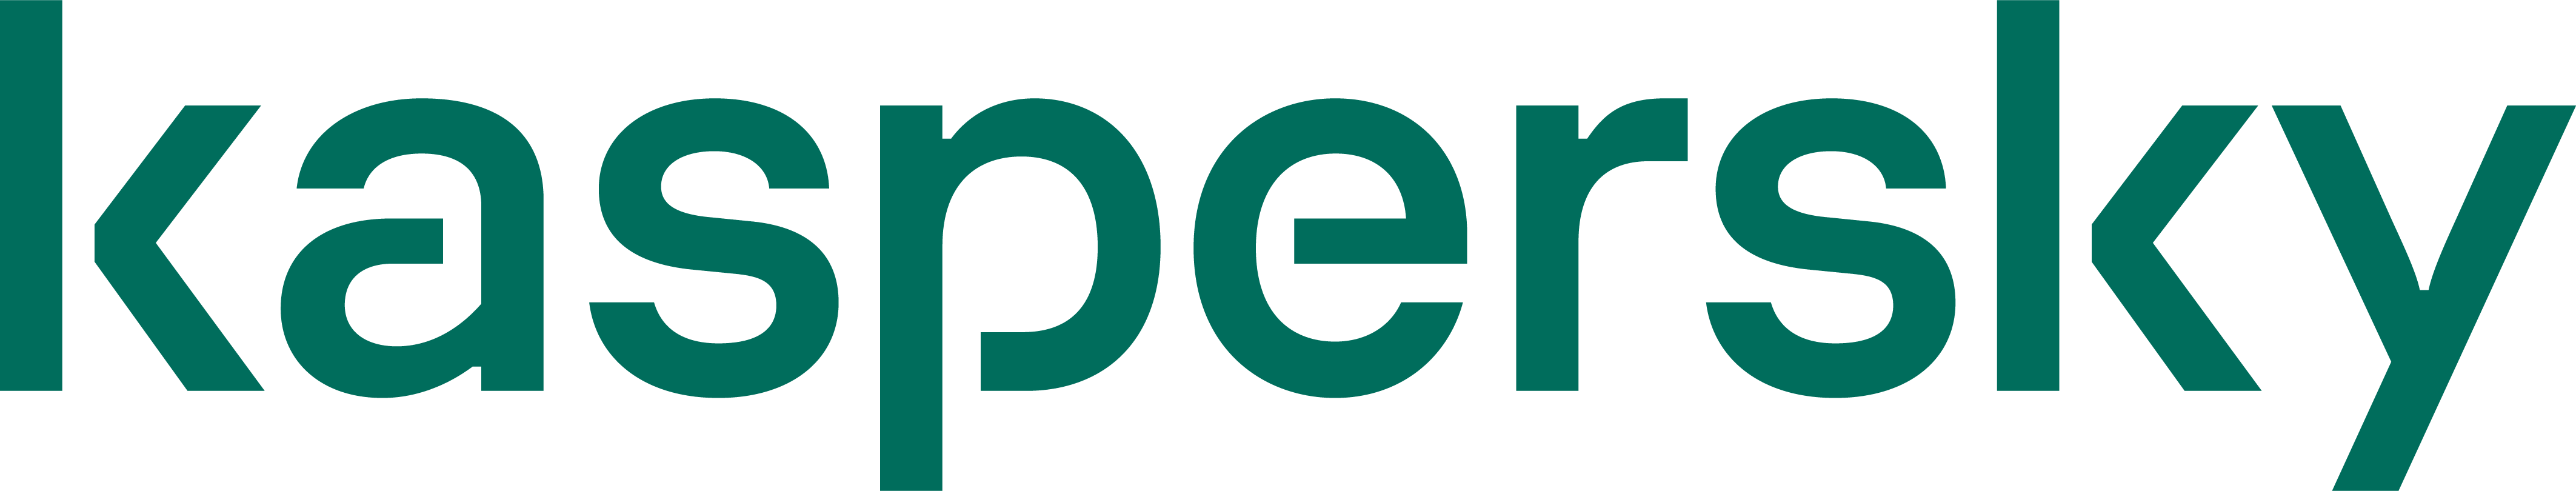 Kaspersky-logo-PNG